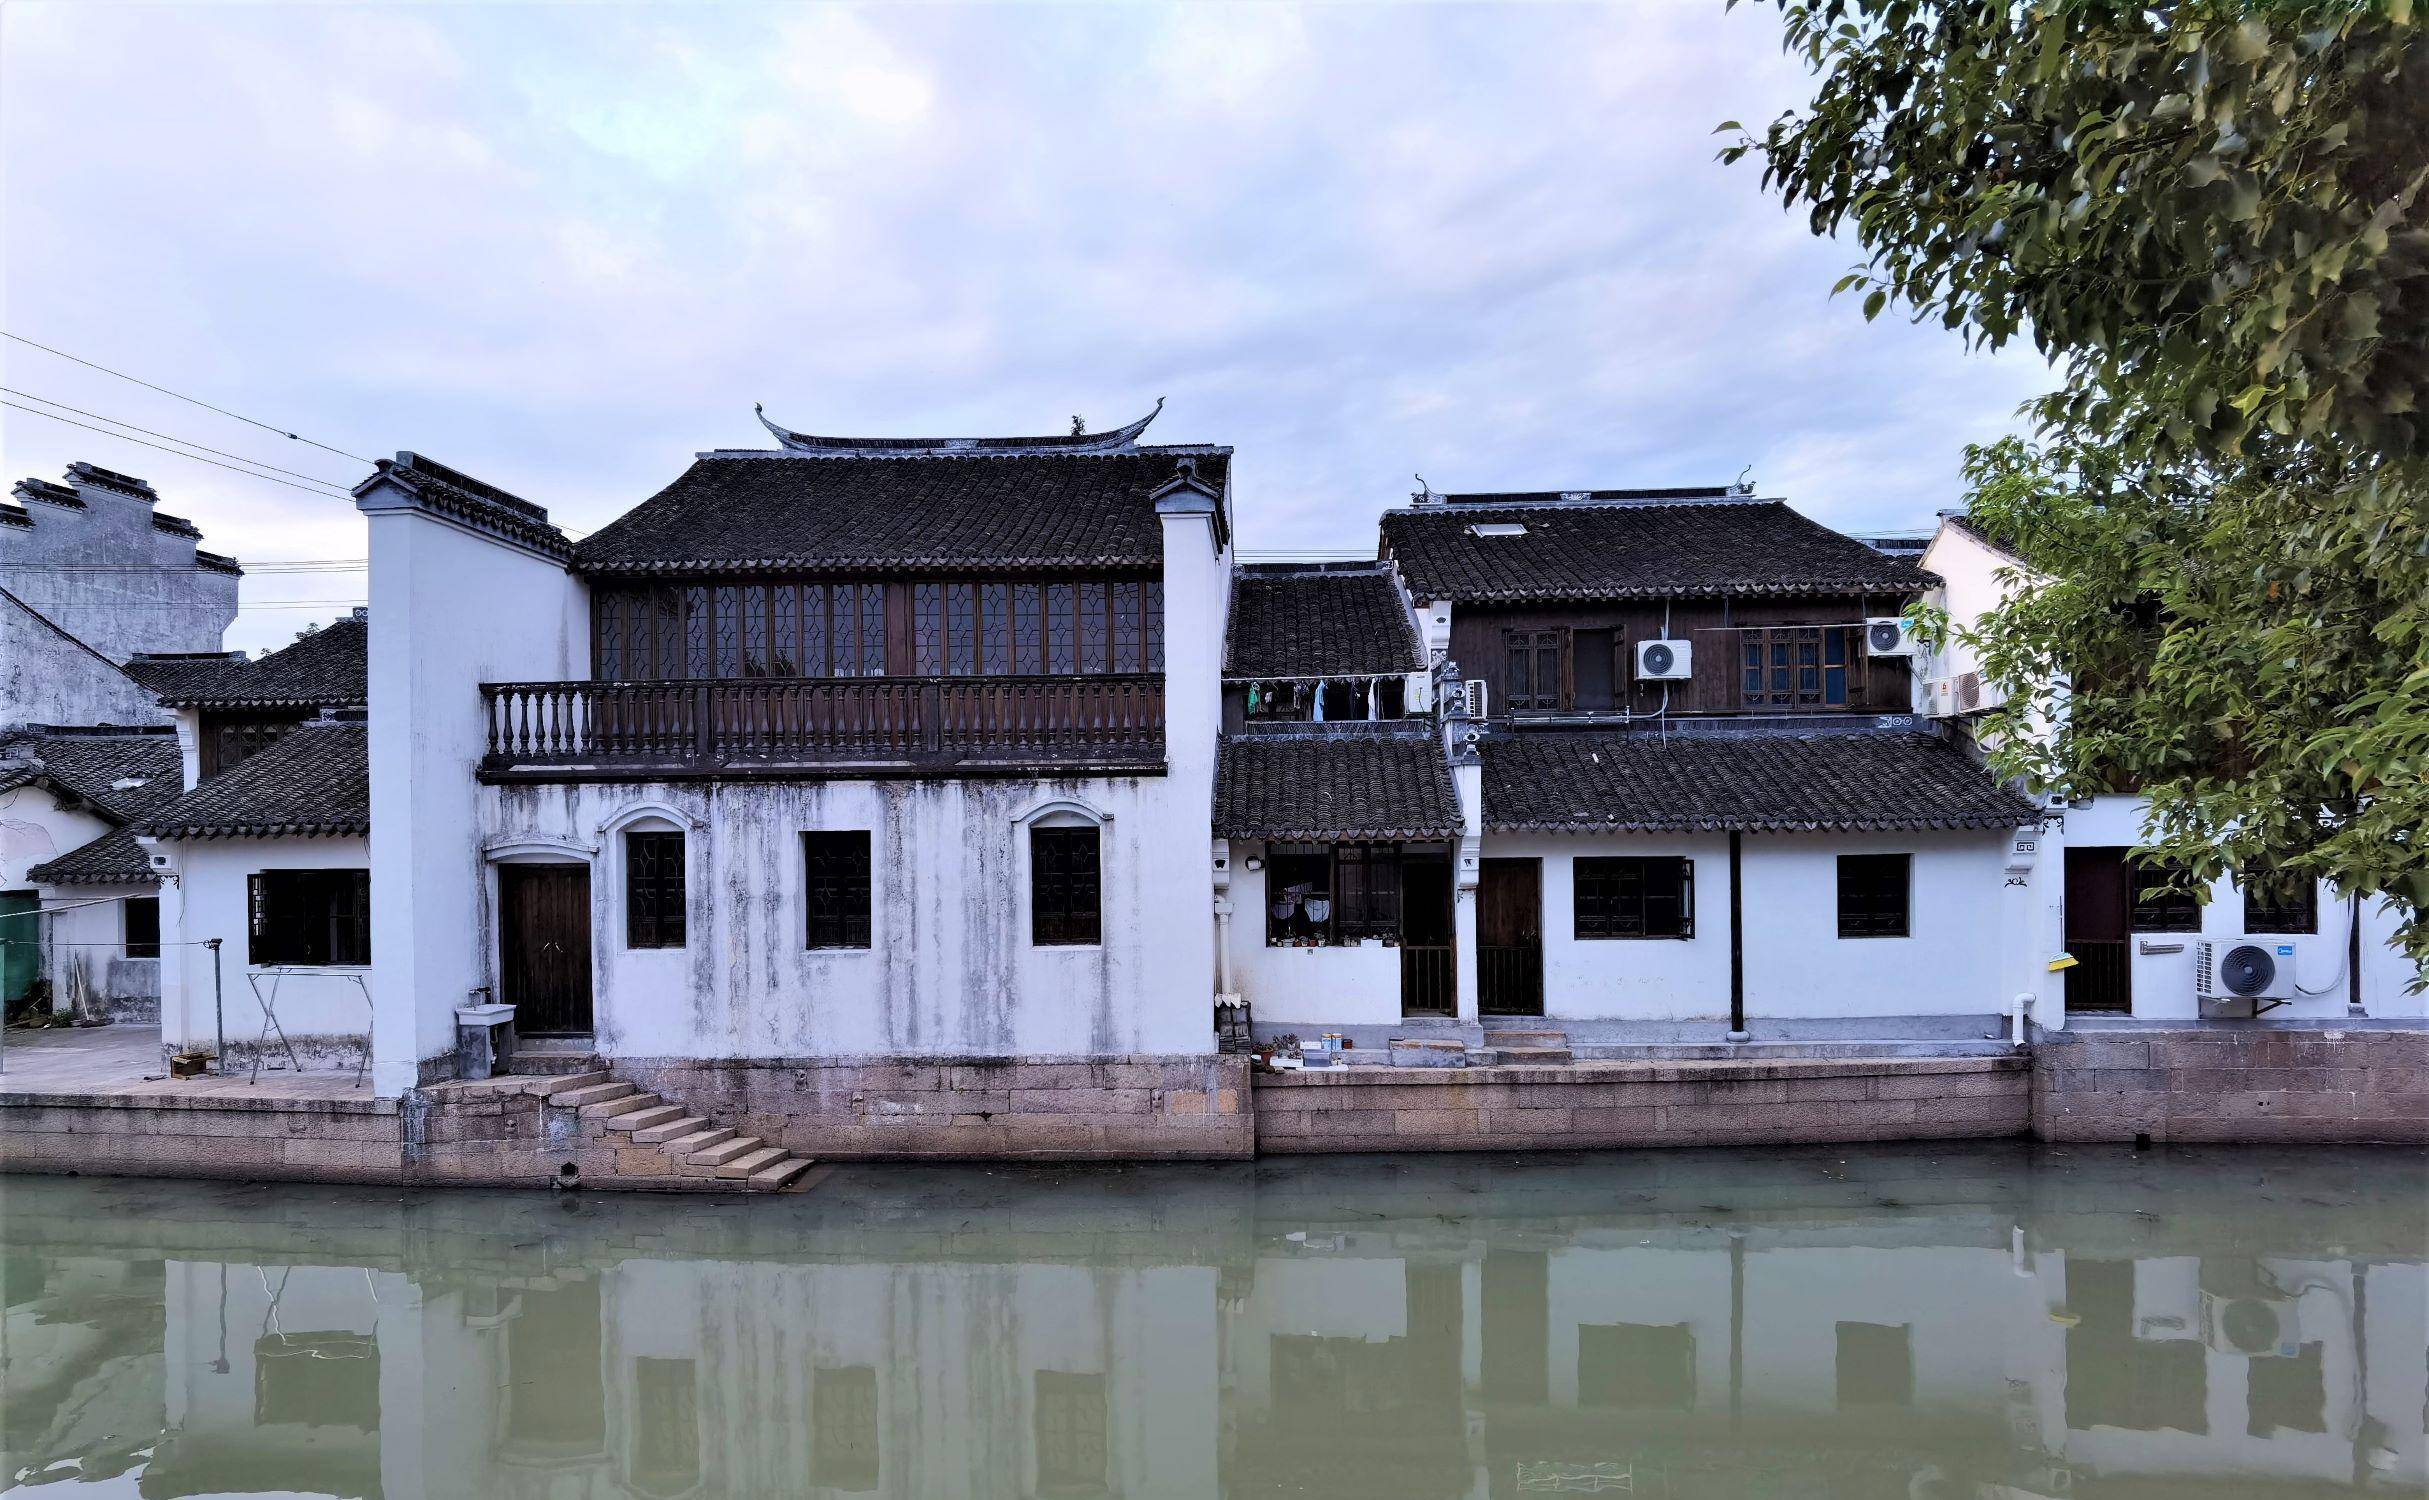 上海的这座古镇，具有独特的风貌，走走看看，古镇韵味十足